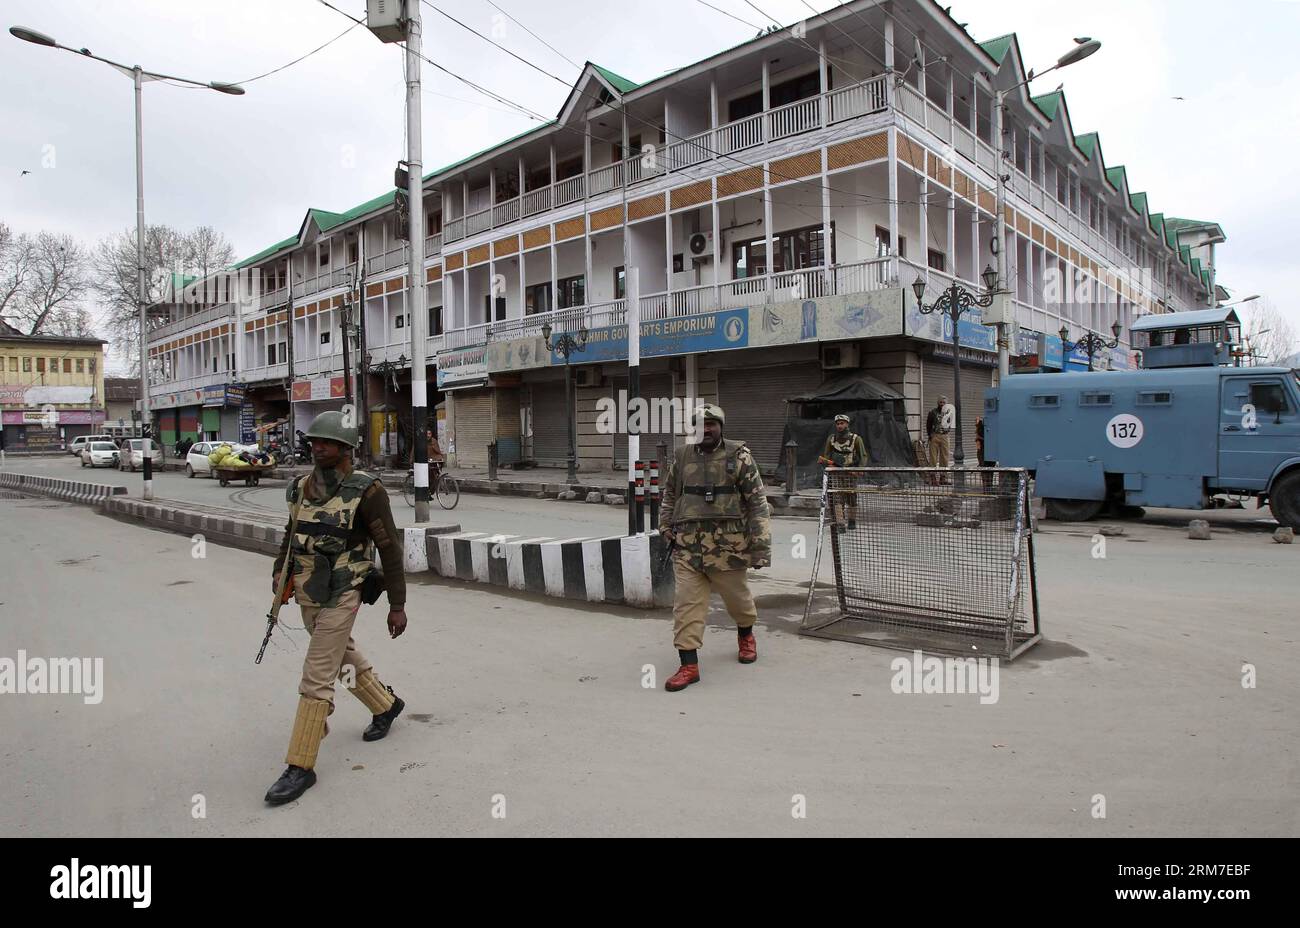 (140228) -- SRINAGAR, 28 febbraio 2014 (Xinhua) -- le truppe paramilitari indiane camminano in un mercato chiuso durante lo sciopero a Srinagar, capitale estiva del Kashmir controllato dagli indiani, il 28 febbraio 2014. Un arresto è stato osservato dalle aree a maggioranza musulmana del Kashmir controllato dagli indiani in seguito alla chiamata dei gruppi separatisti del Kashmir che cercavano l'identificazione di sette sospetti militanti uccisi dall'esercito indiano lunedì nel distretto di Kupwara, a circa 125 km a nord-ovest della città di Srinagar. Le proteste scoppiarono nella zona dopo che i civili sostenevano che gli uomini uccisi fossero civili. La polizia non ha identificato l'sl Foto Stock